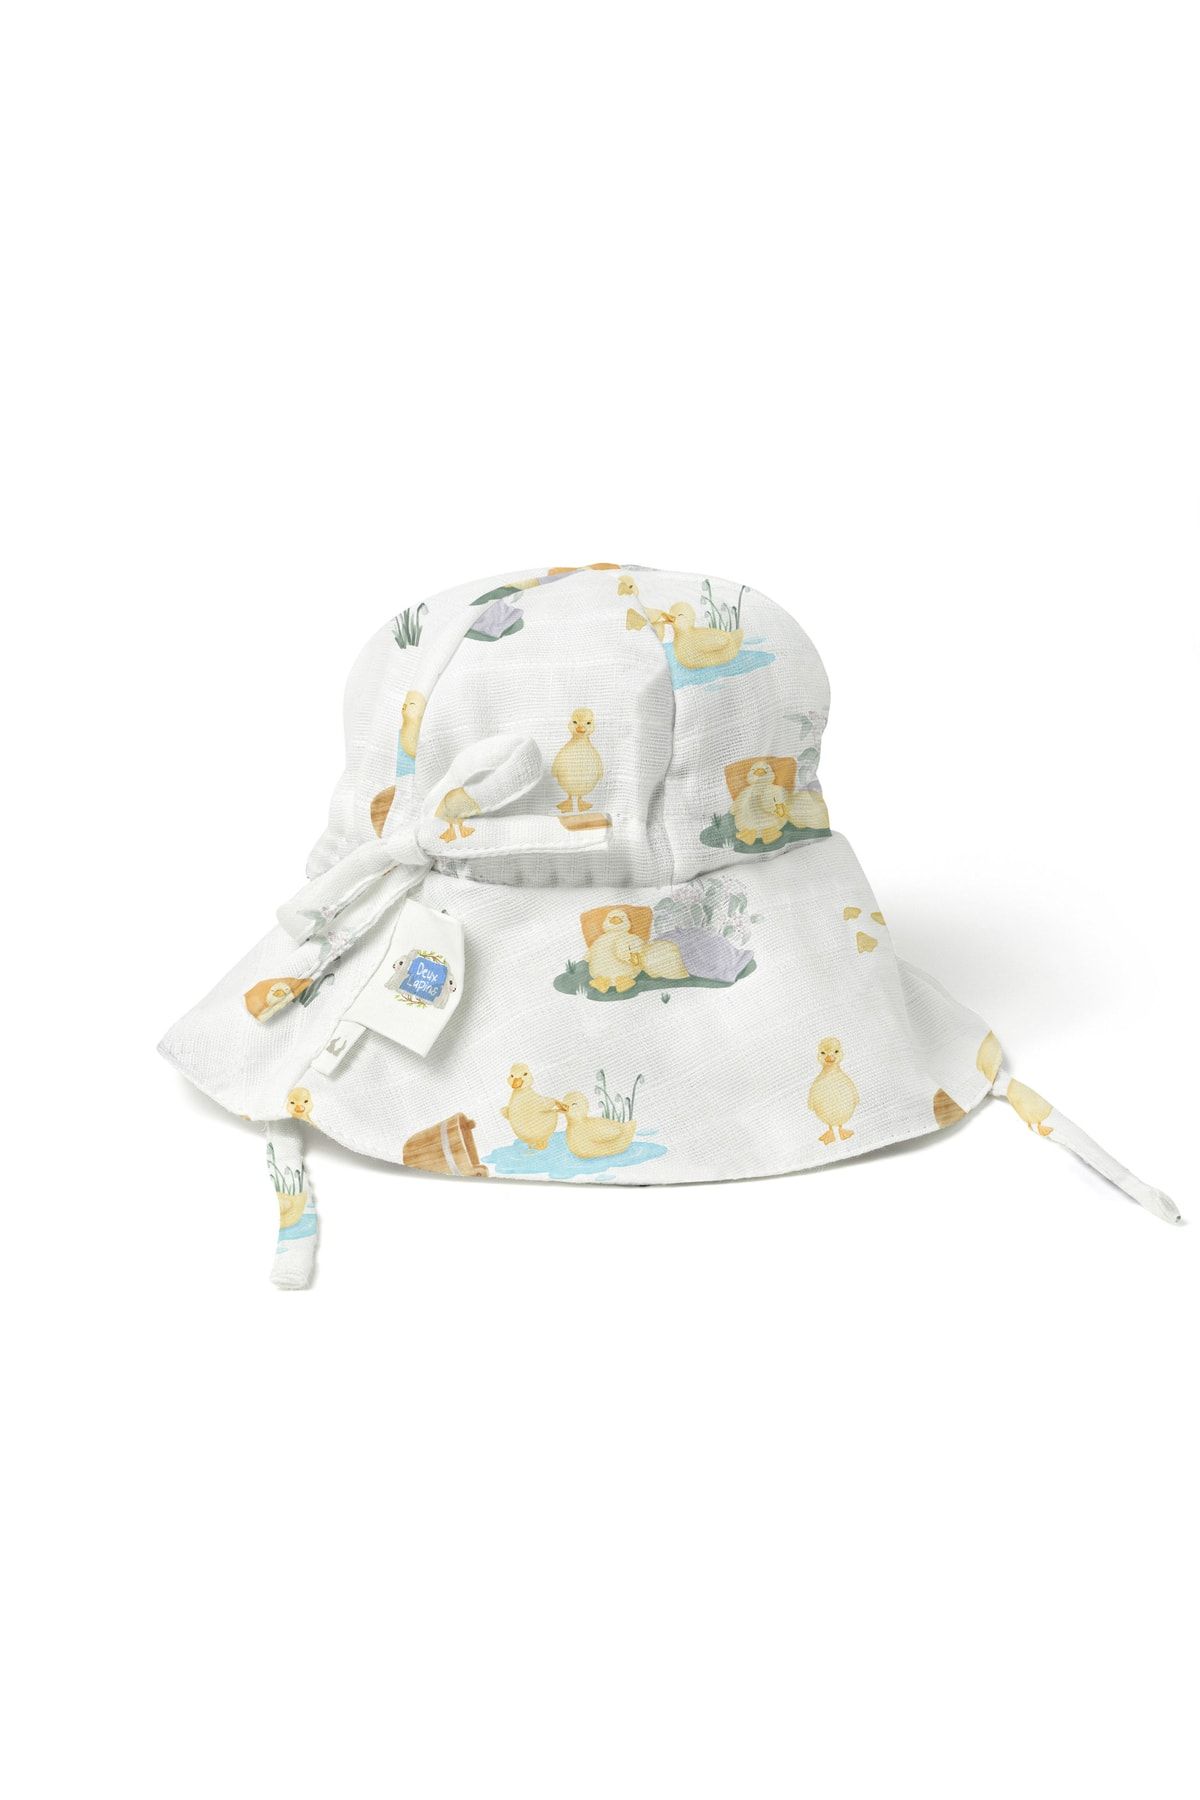 Deux Lapins Müslin Bebek Şapkası 12-18 Ay Petits Canetons - Yavru Ördek Desen